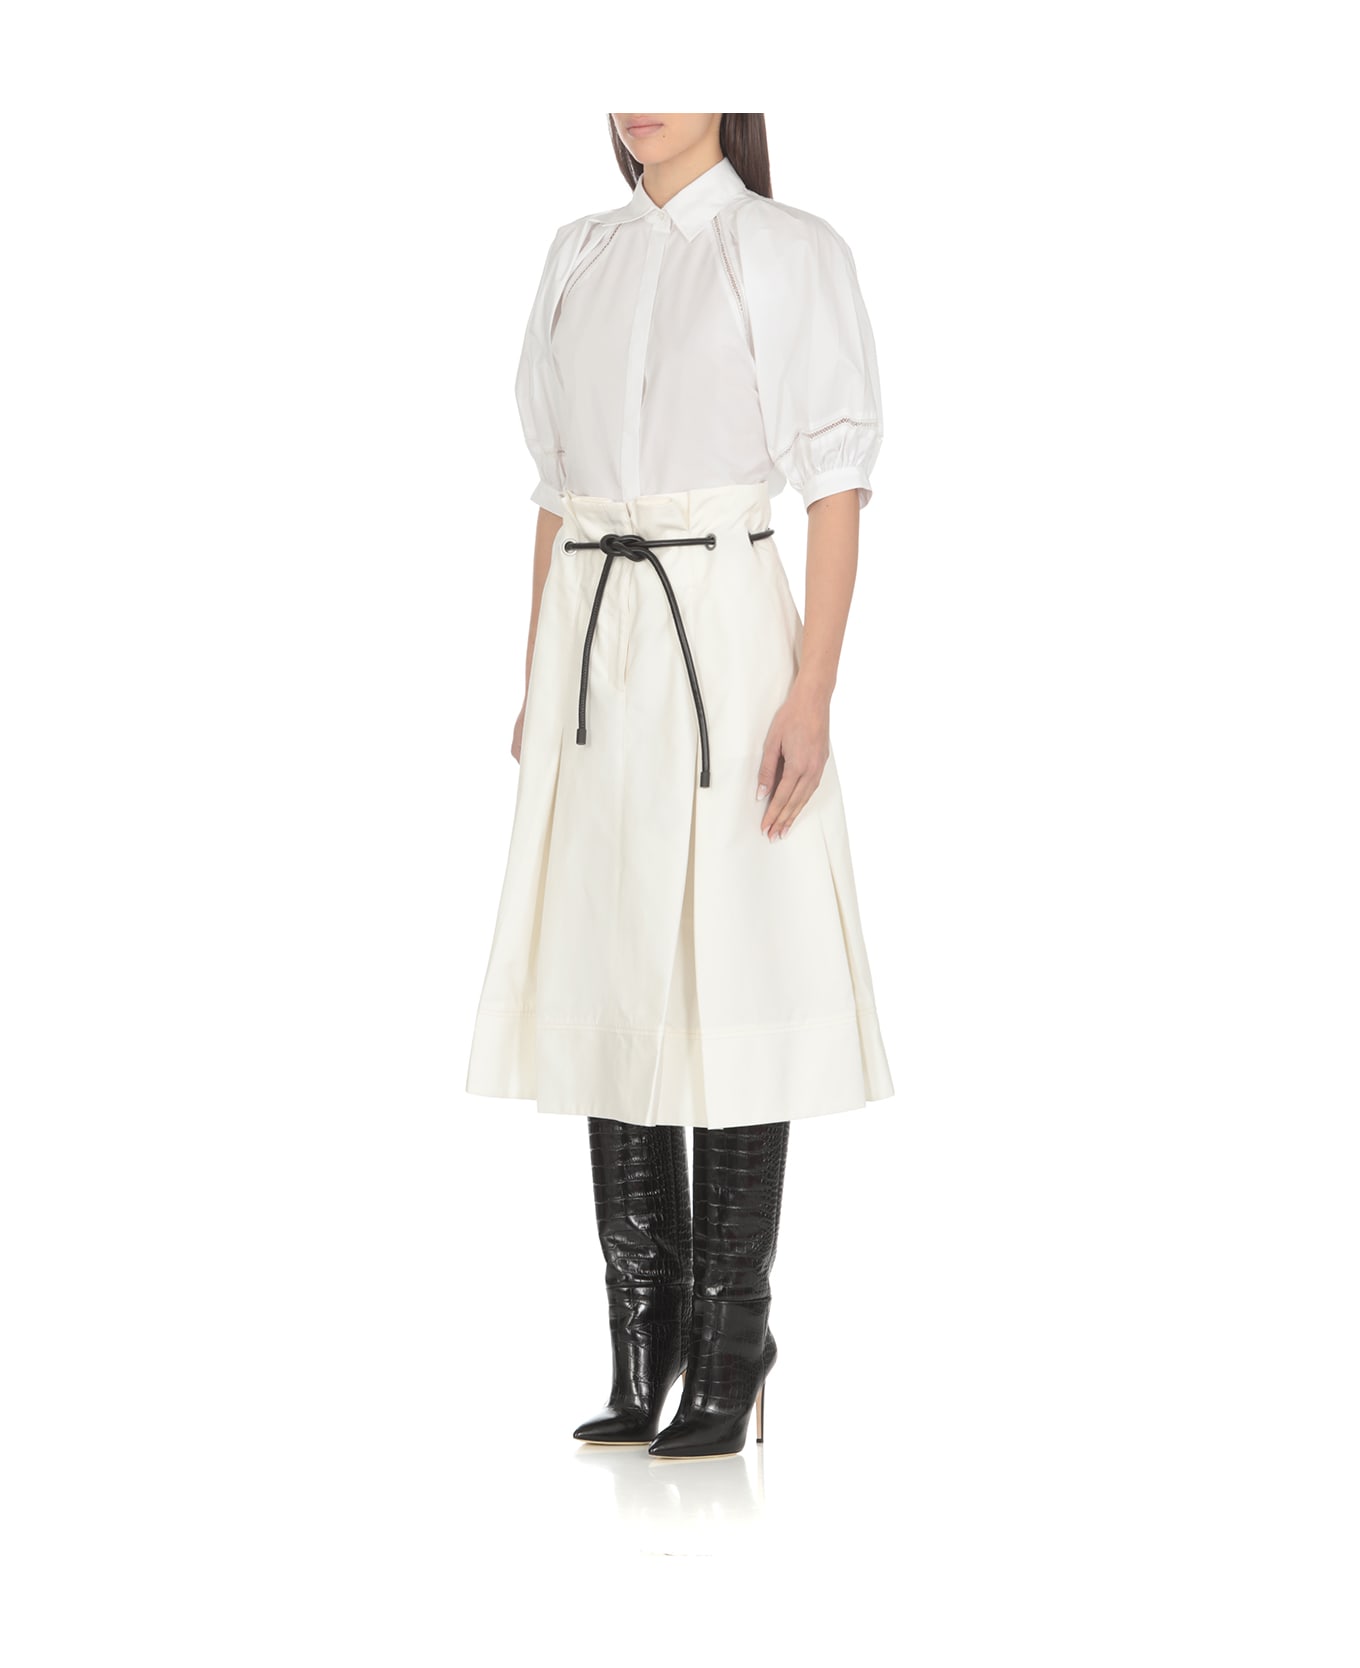 3.1 Phillip Lim Origami Skirt - White スカート